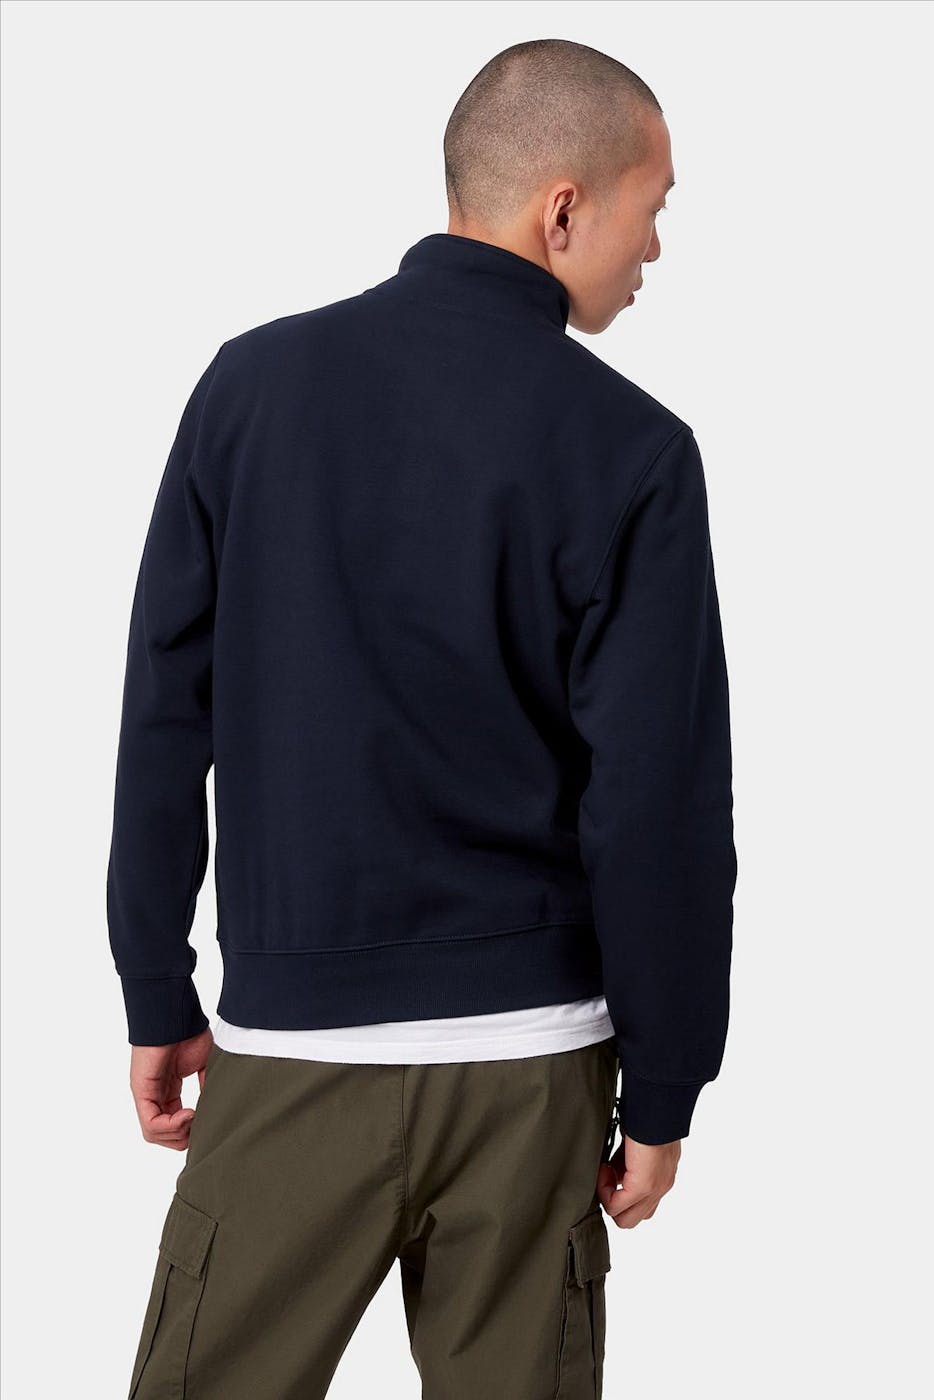 Carhartt WIP - Donkerblauwe Chase Neck Zip sweater